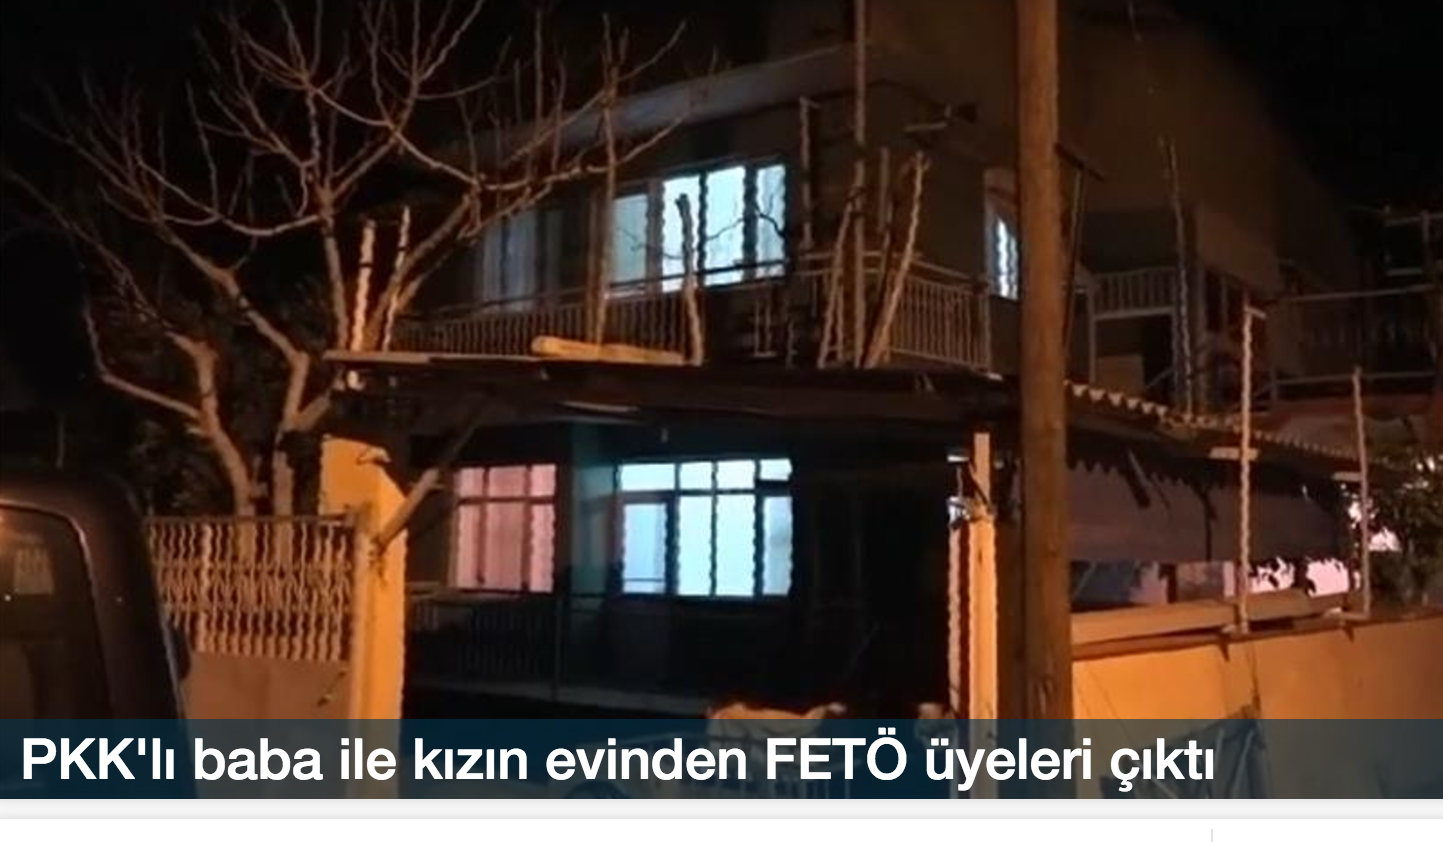 PKK'lı baba ile kızın evinden FETÖ üyeleri çıktı!..